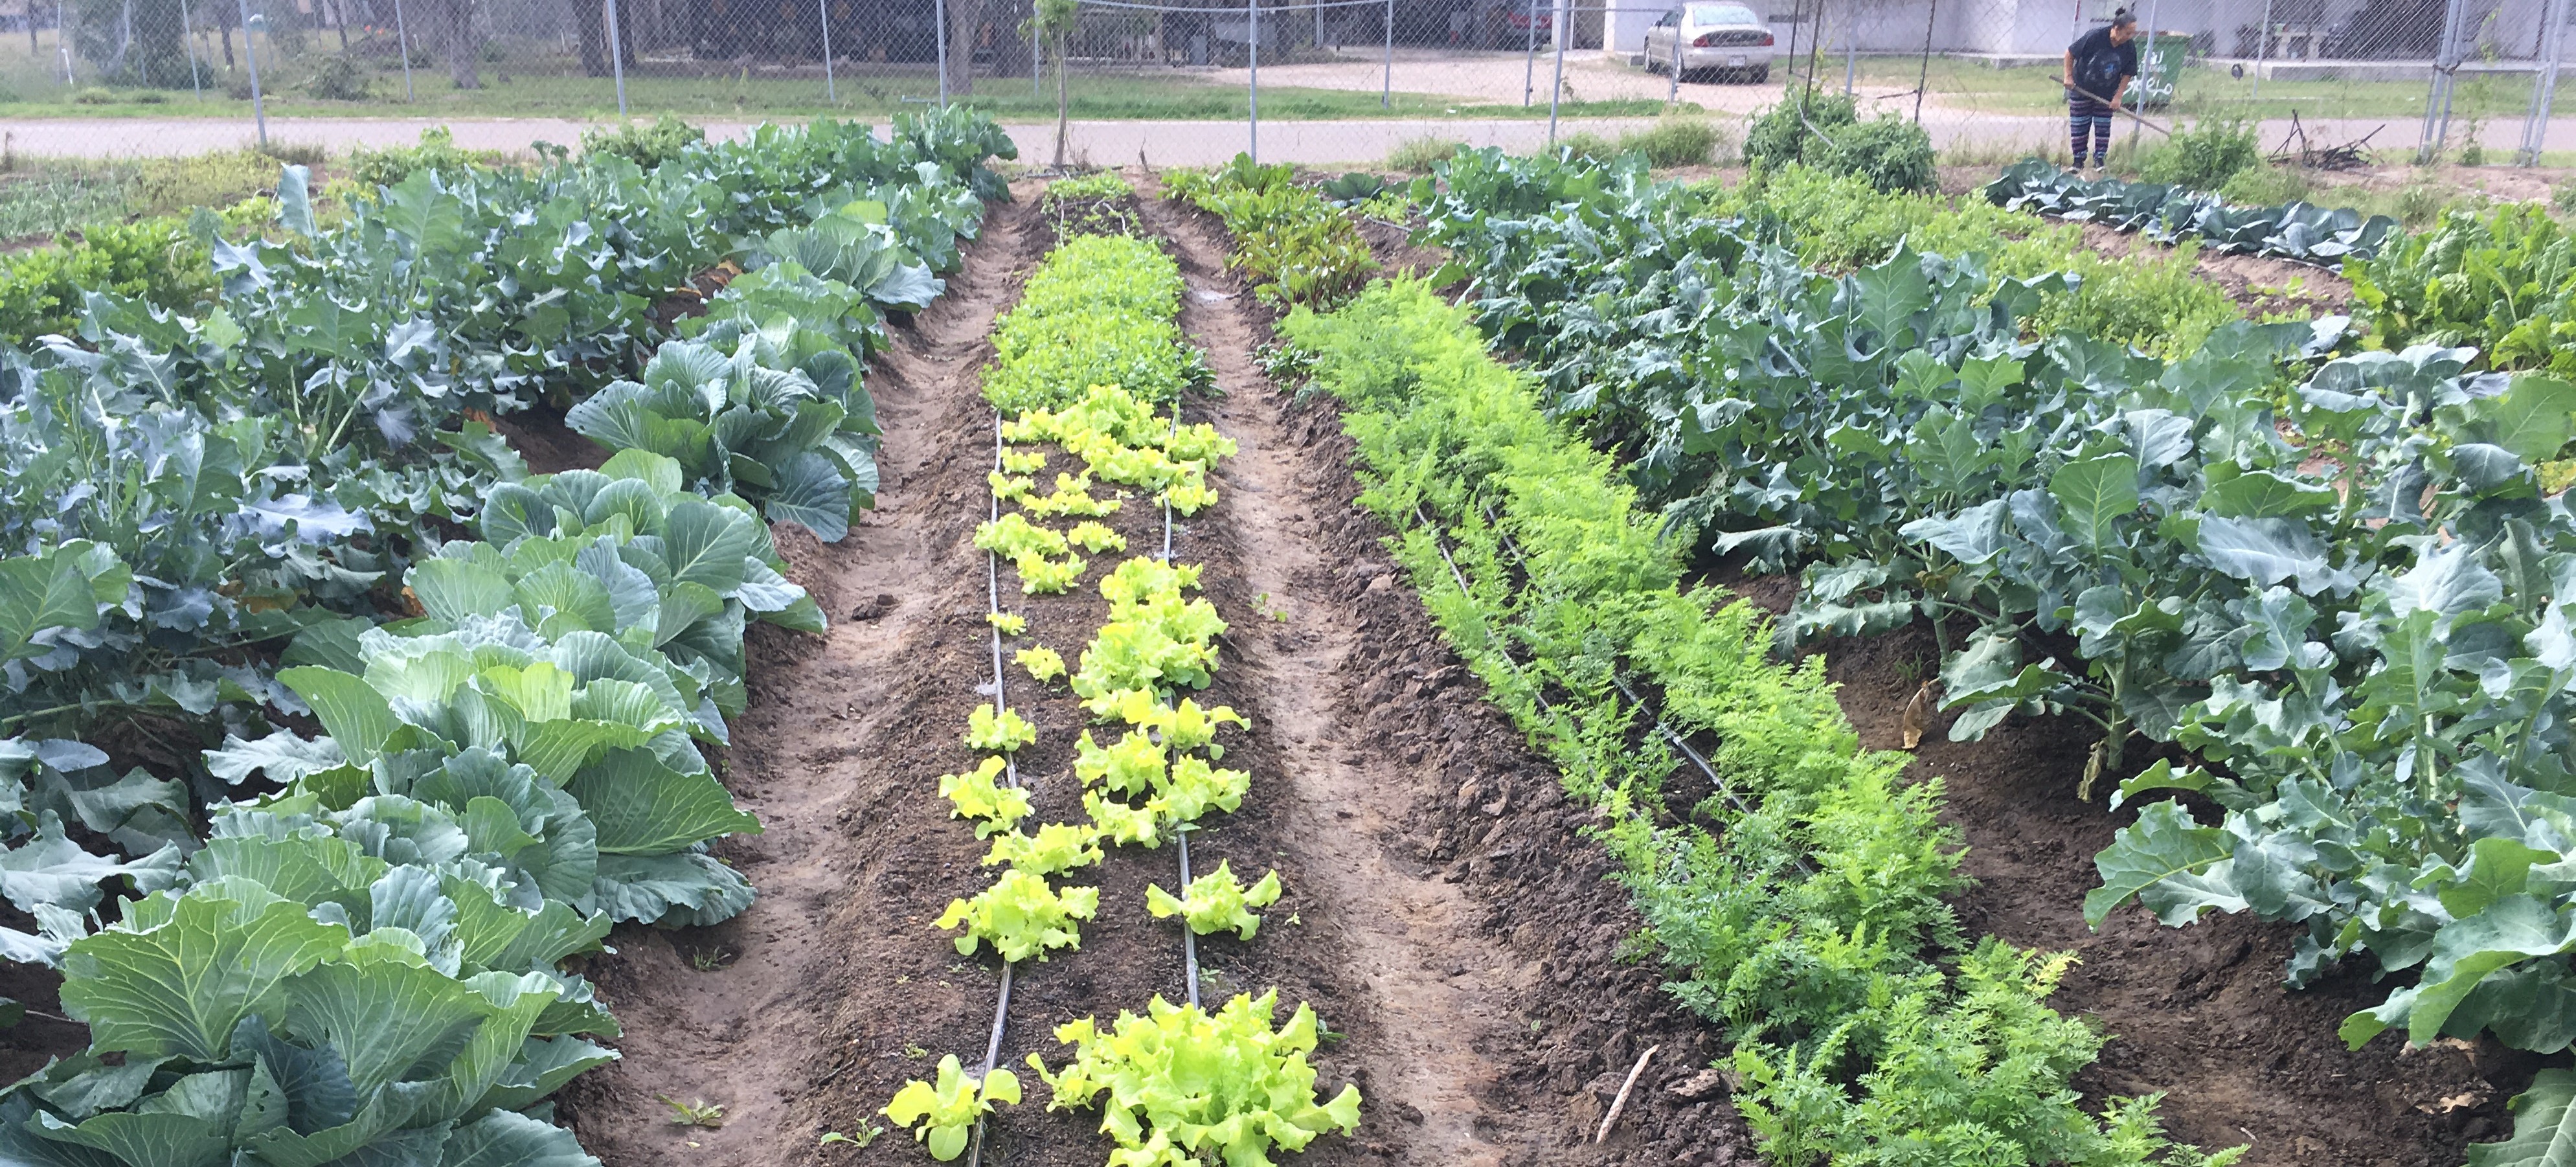 garden rows of fresh produce